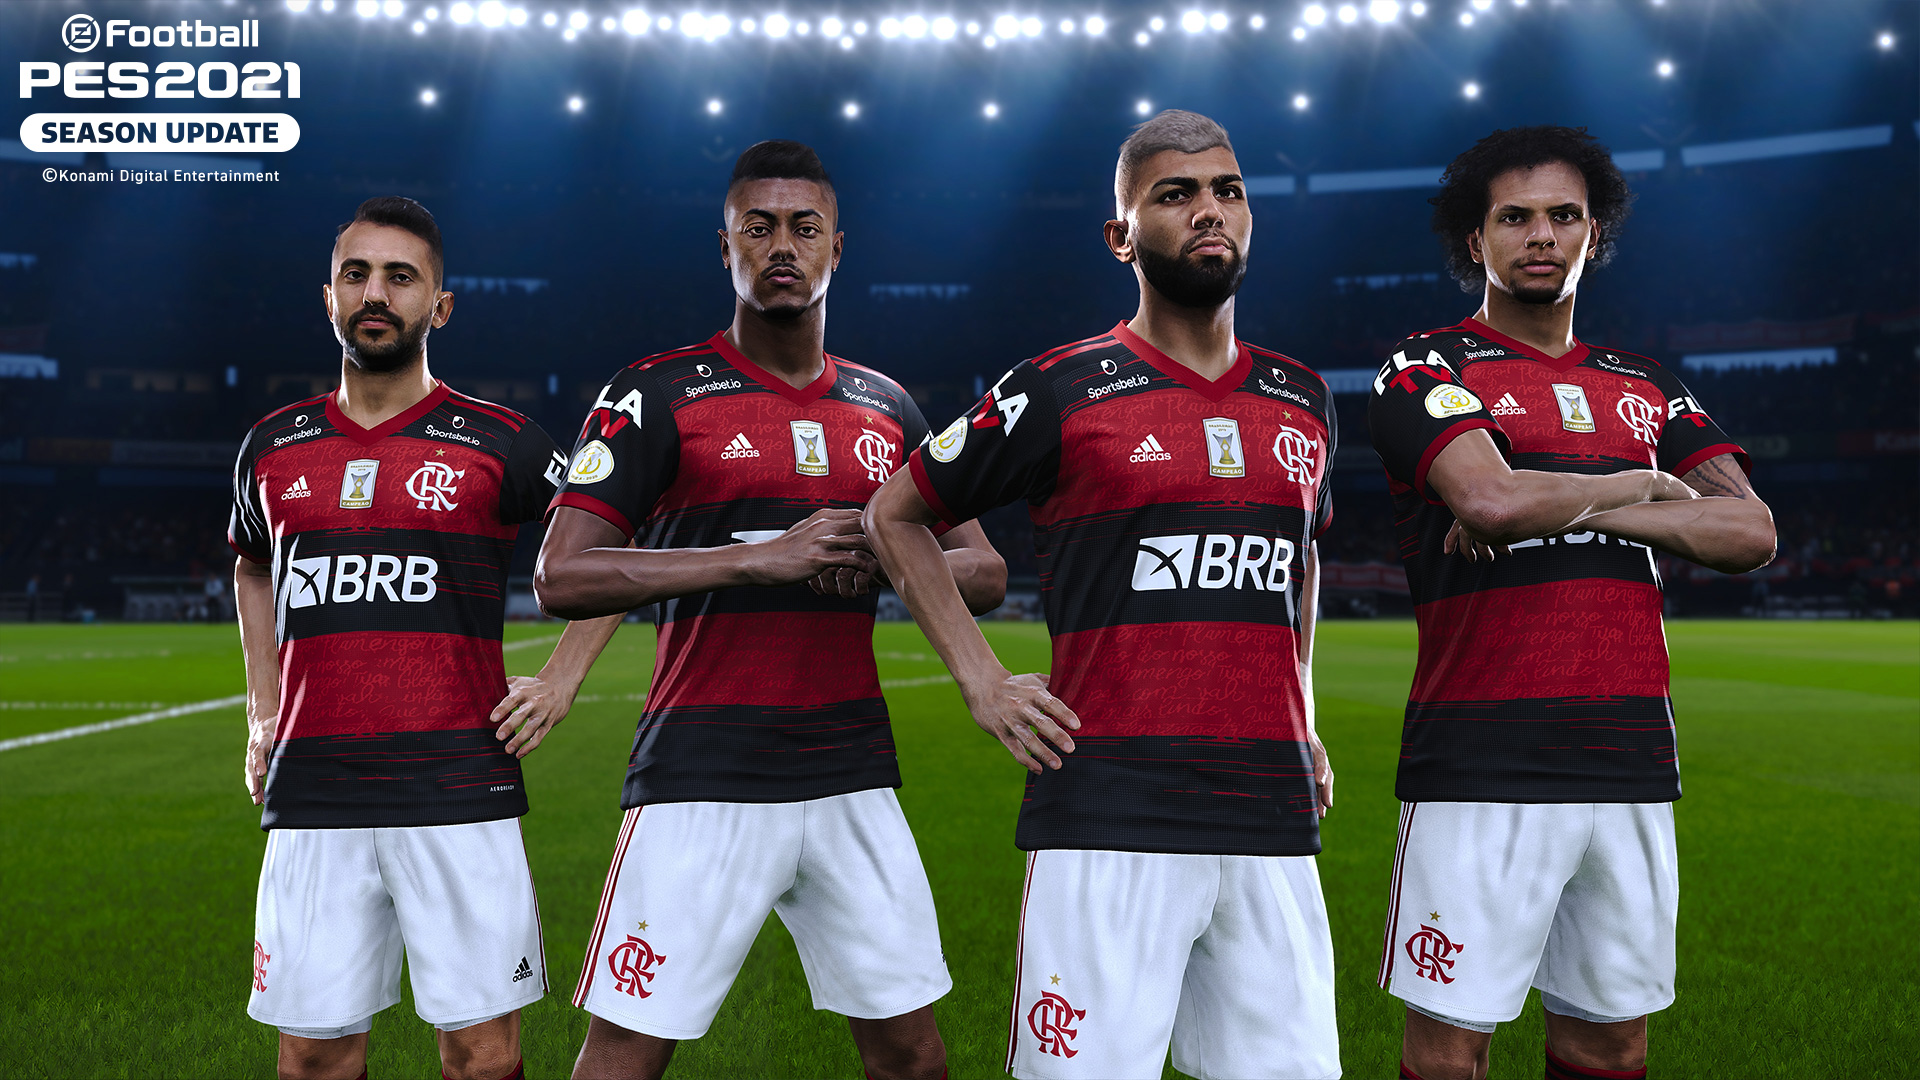 Jogos: eFootball PES 2021 revela parceria com o Flamengo